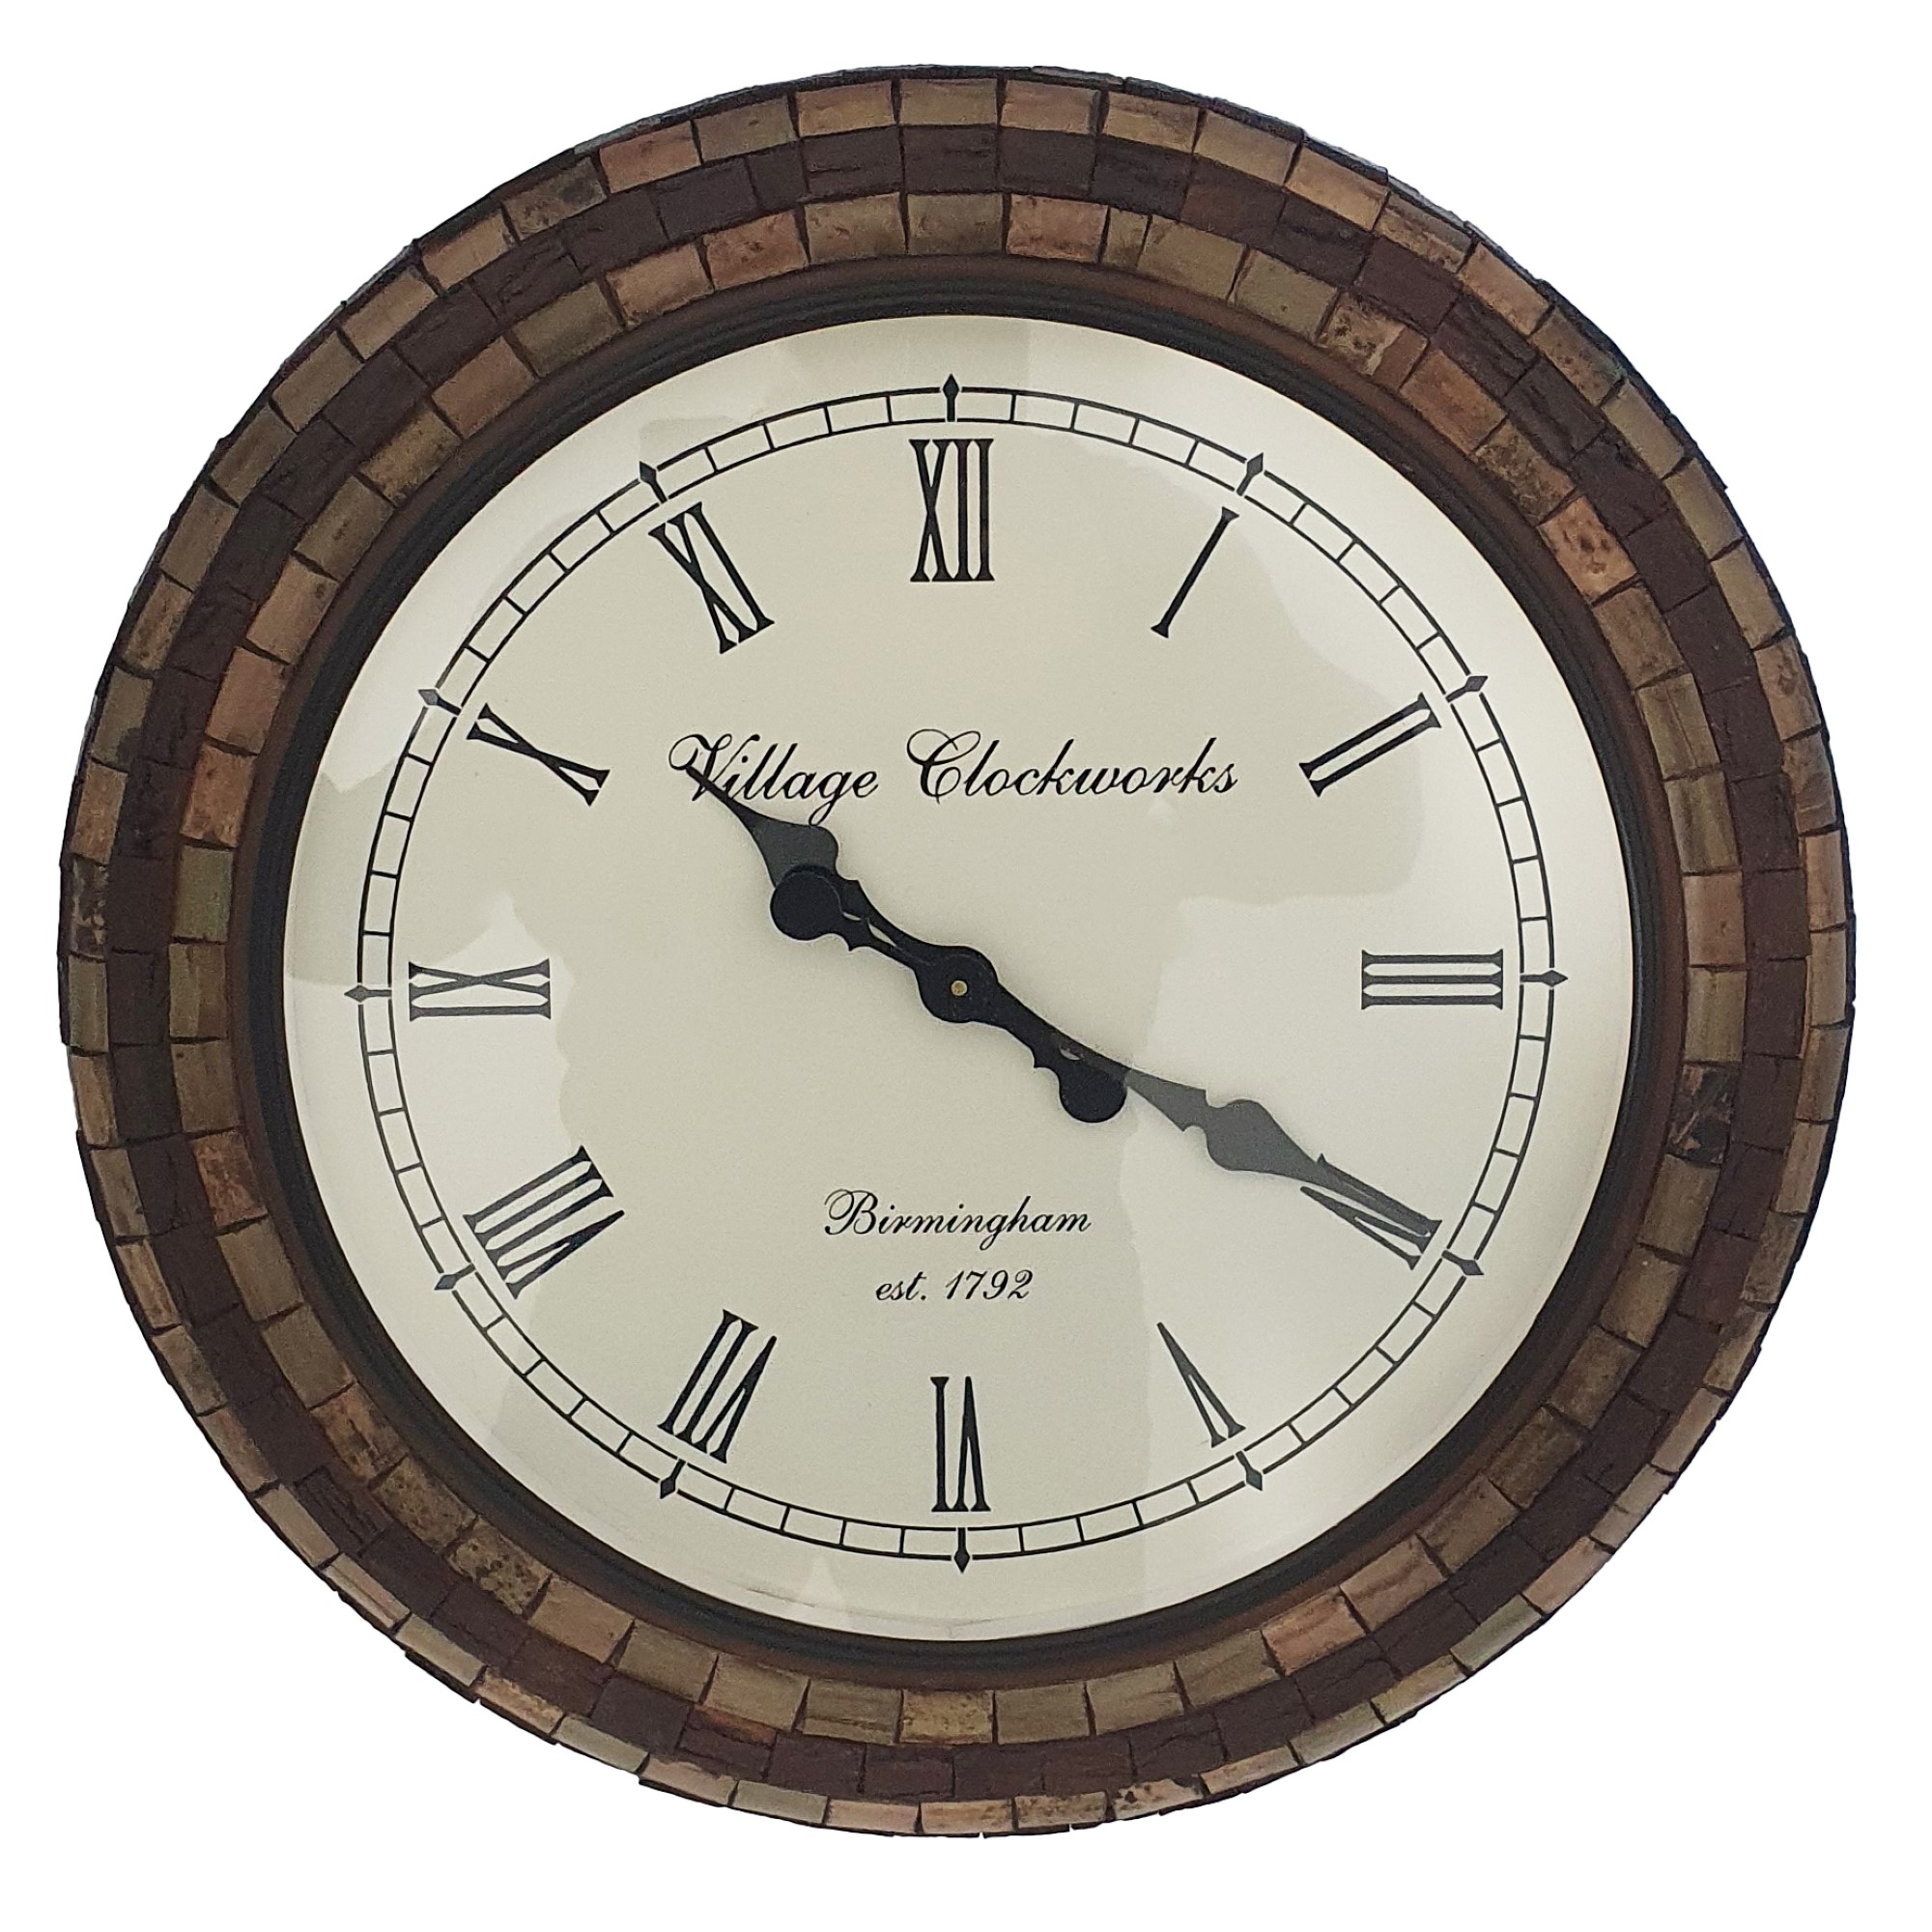 Ghari Indyjski loftowy zegar Village Clockworks